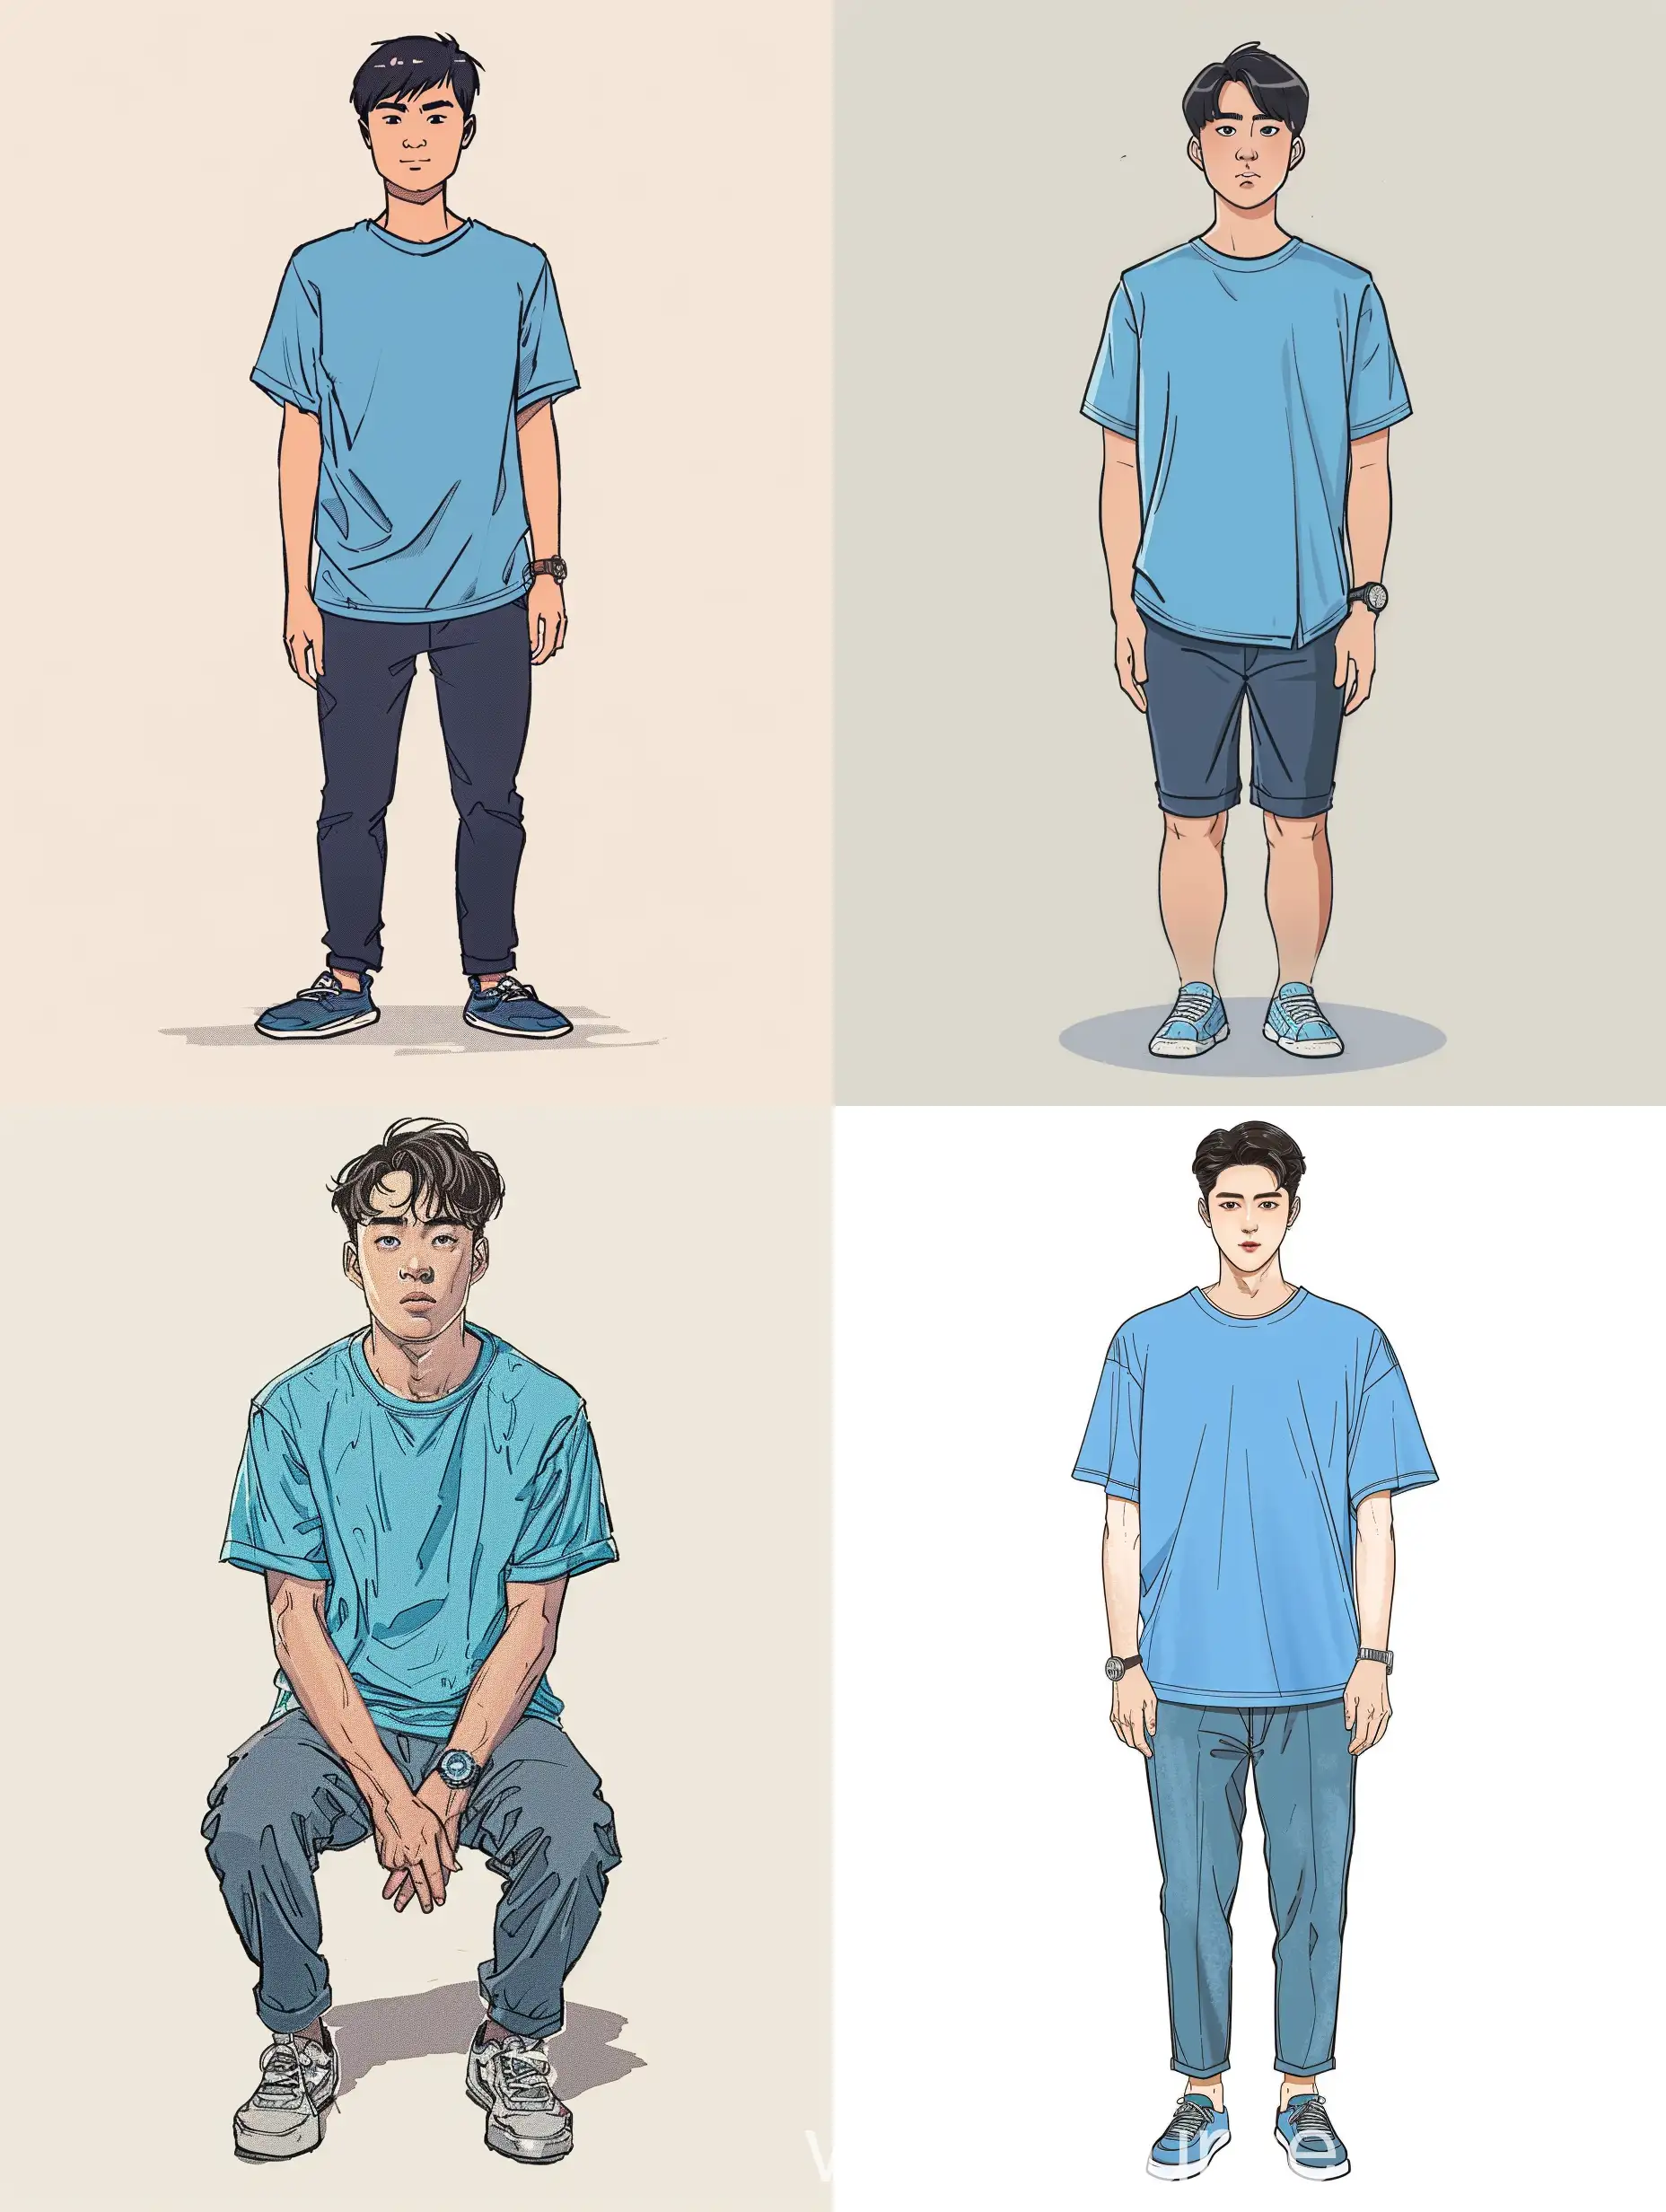 创作一个大学生，男生，穿湖蓝色T-shirt，分头，很帅气，时尚，左手戴手表，华人面孔，创作全身，有手和脚，还有鞋子，人物站立，不要下蹲，